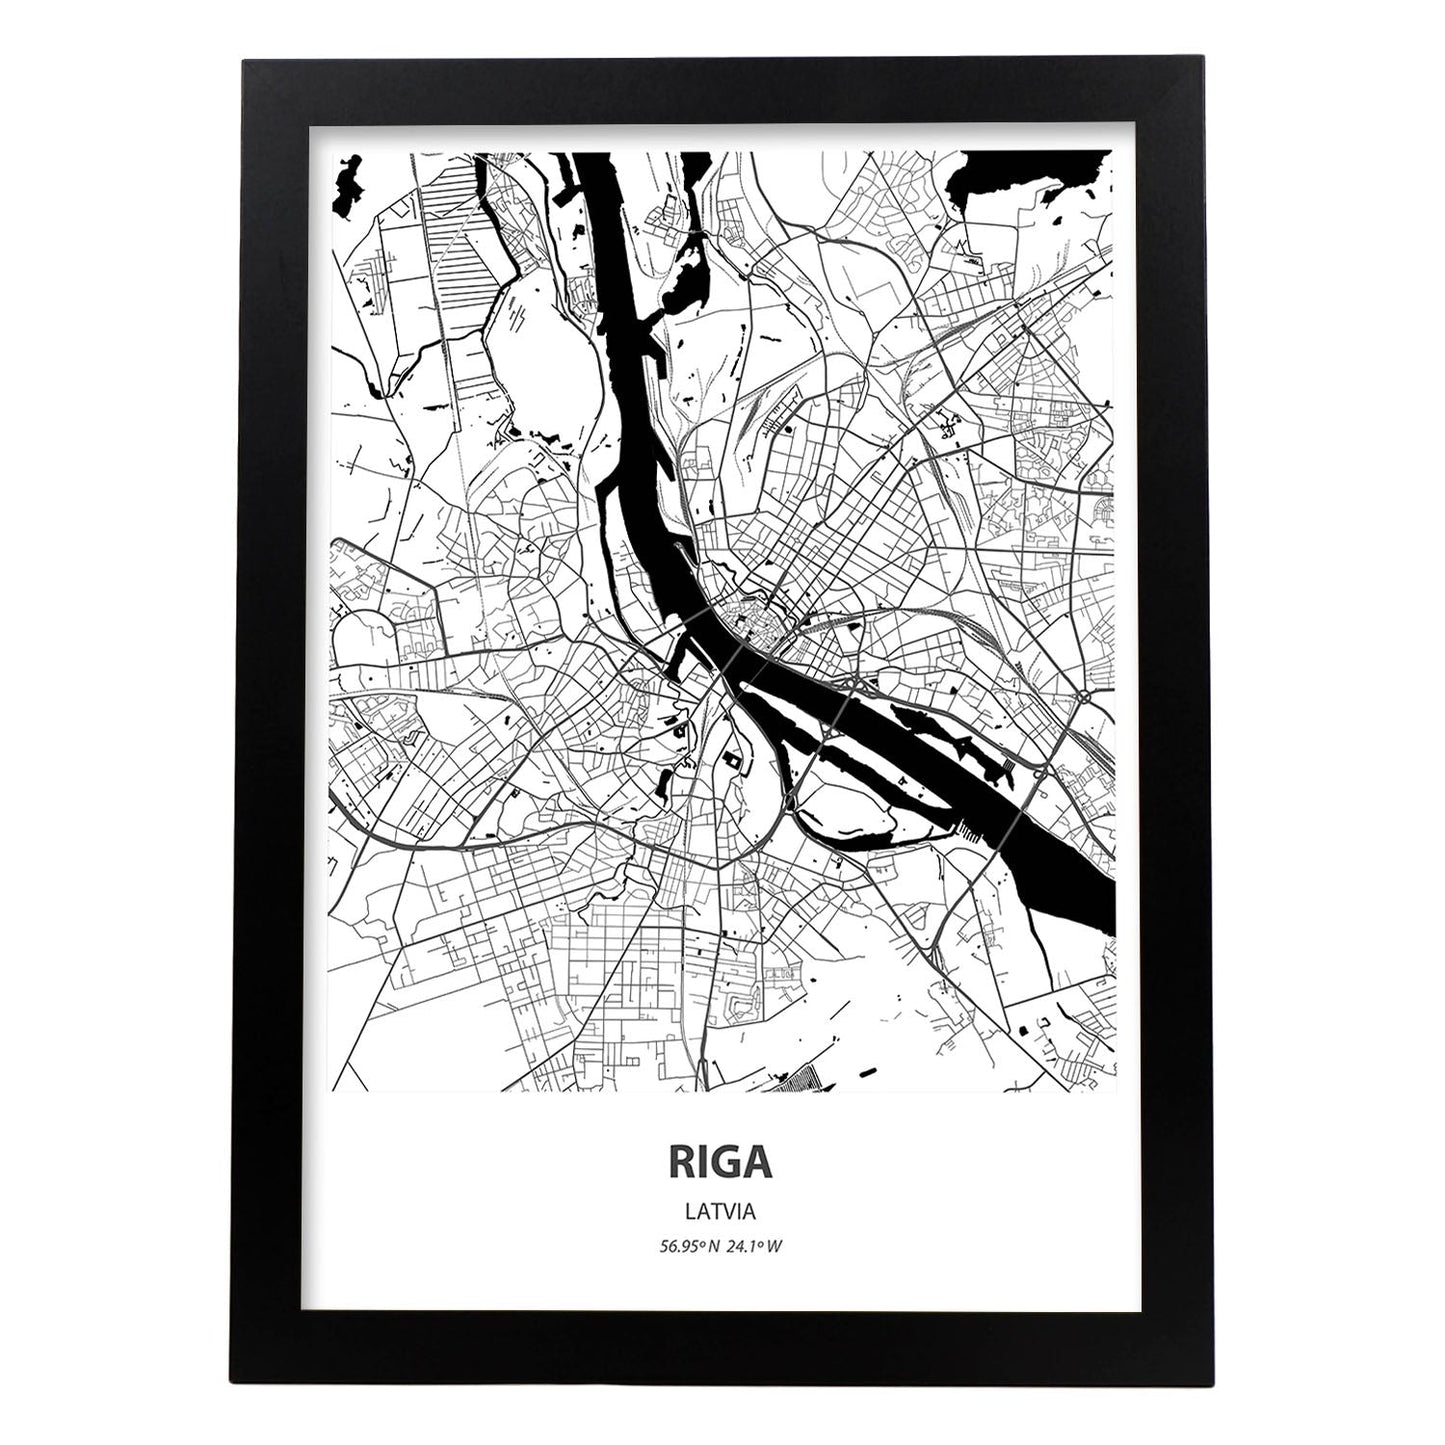 Poster con mapa de Riga - Latvia. Láminas de ciudades de Europa con mares y ríos en color negro.-Artwork-Nacnic-A3-Marco Negro-Nacnic Estudio SL